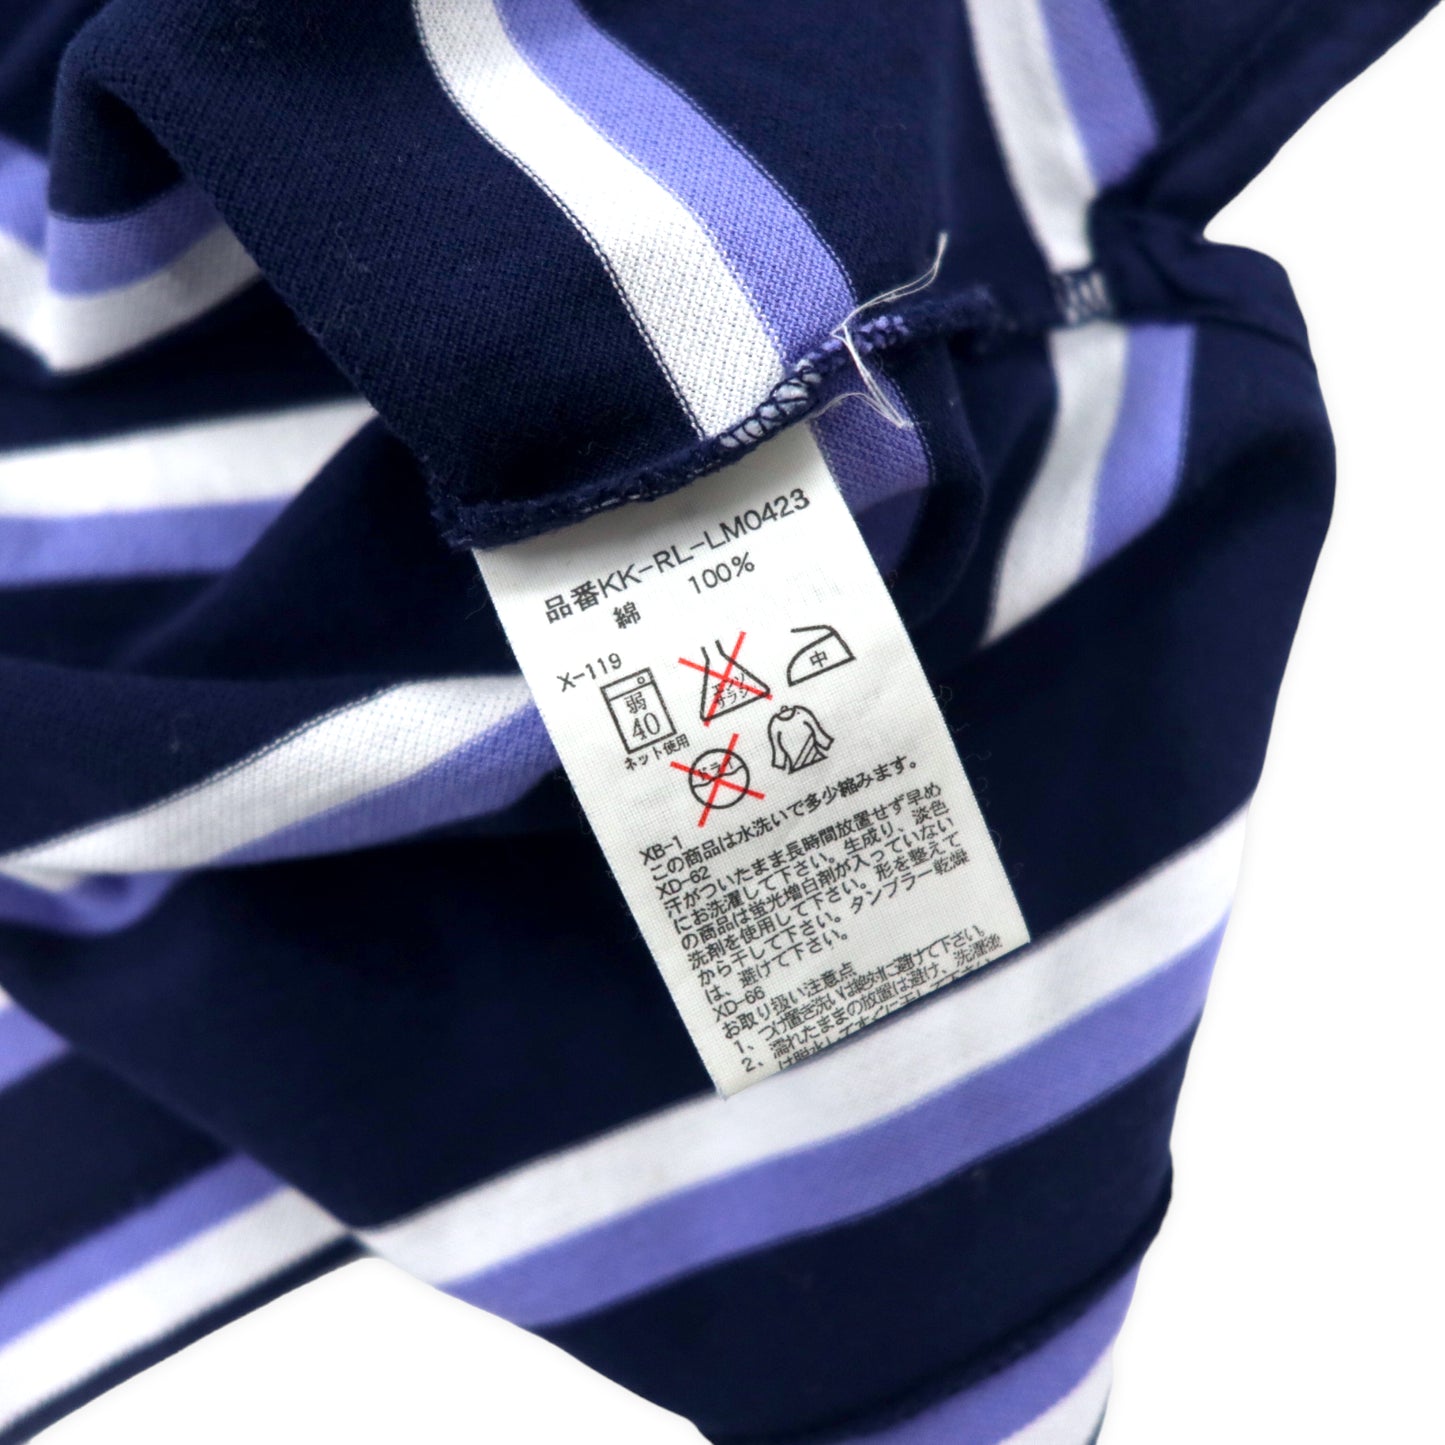 Polo by Ralph Lauren ボーダー ポロシャツ M ネイビー コットン GOLF FIT スモールポニー刺繍